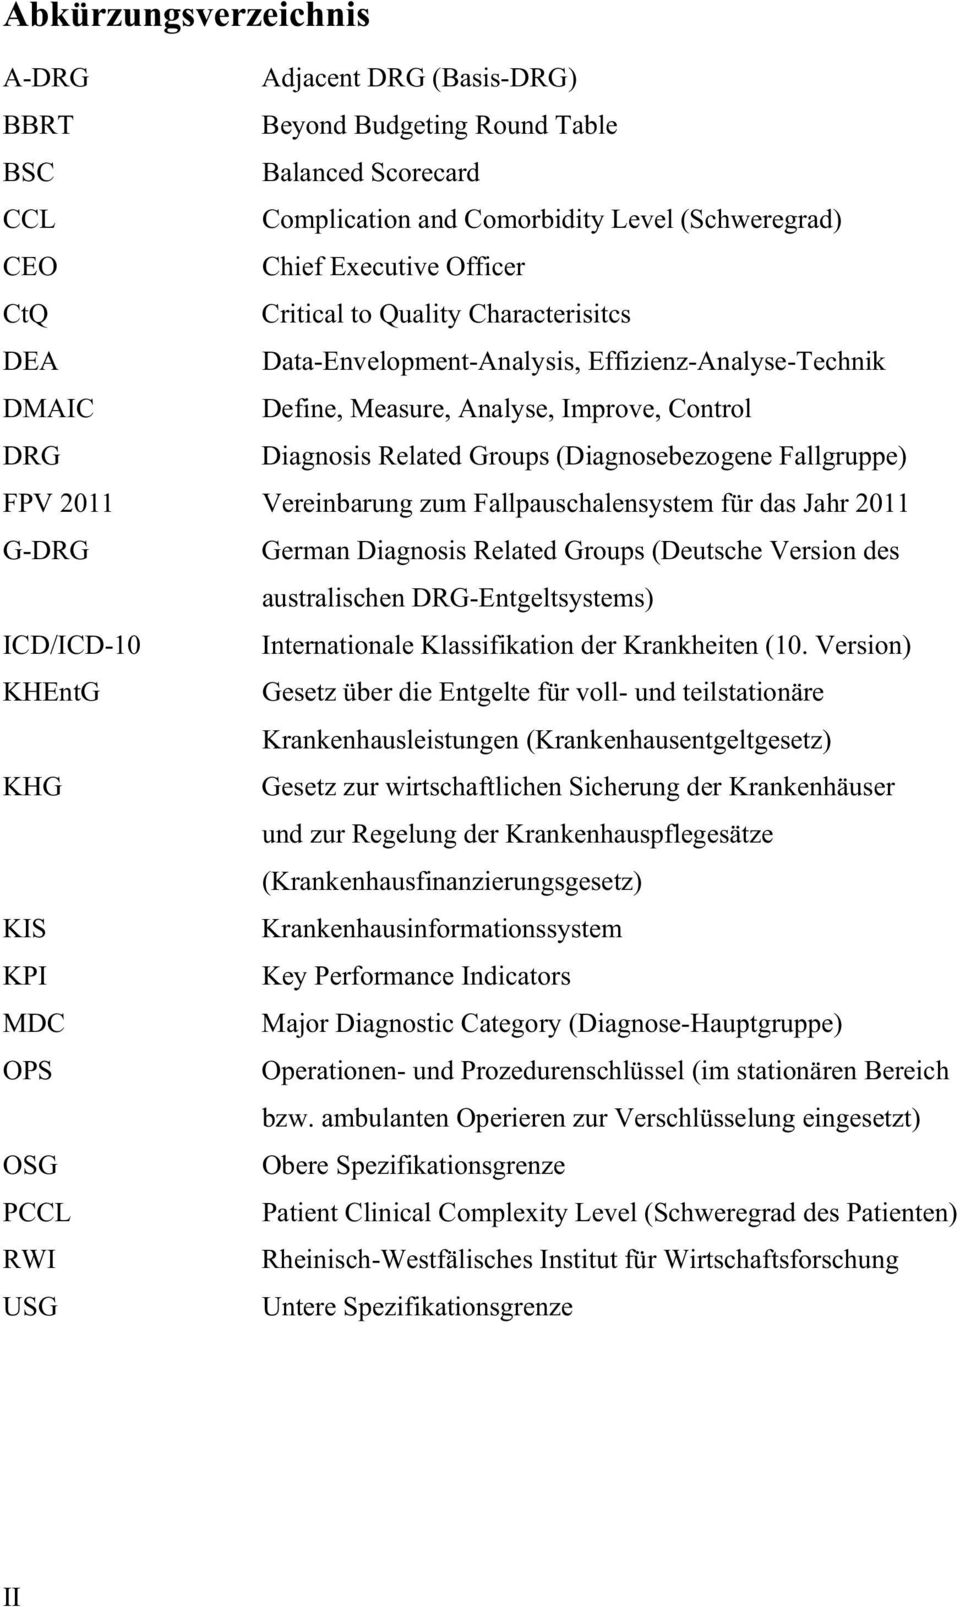 Fallgruppe) FPV 2011 Vereinbarung zum Fallpauschalensystem für das Jahr 2011 G-DRG German Diagnosis Related Groups (Deutsche Version des australischen DRG-Entgeltsystems) ICD/ICD-10 Internationale